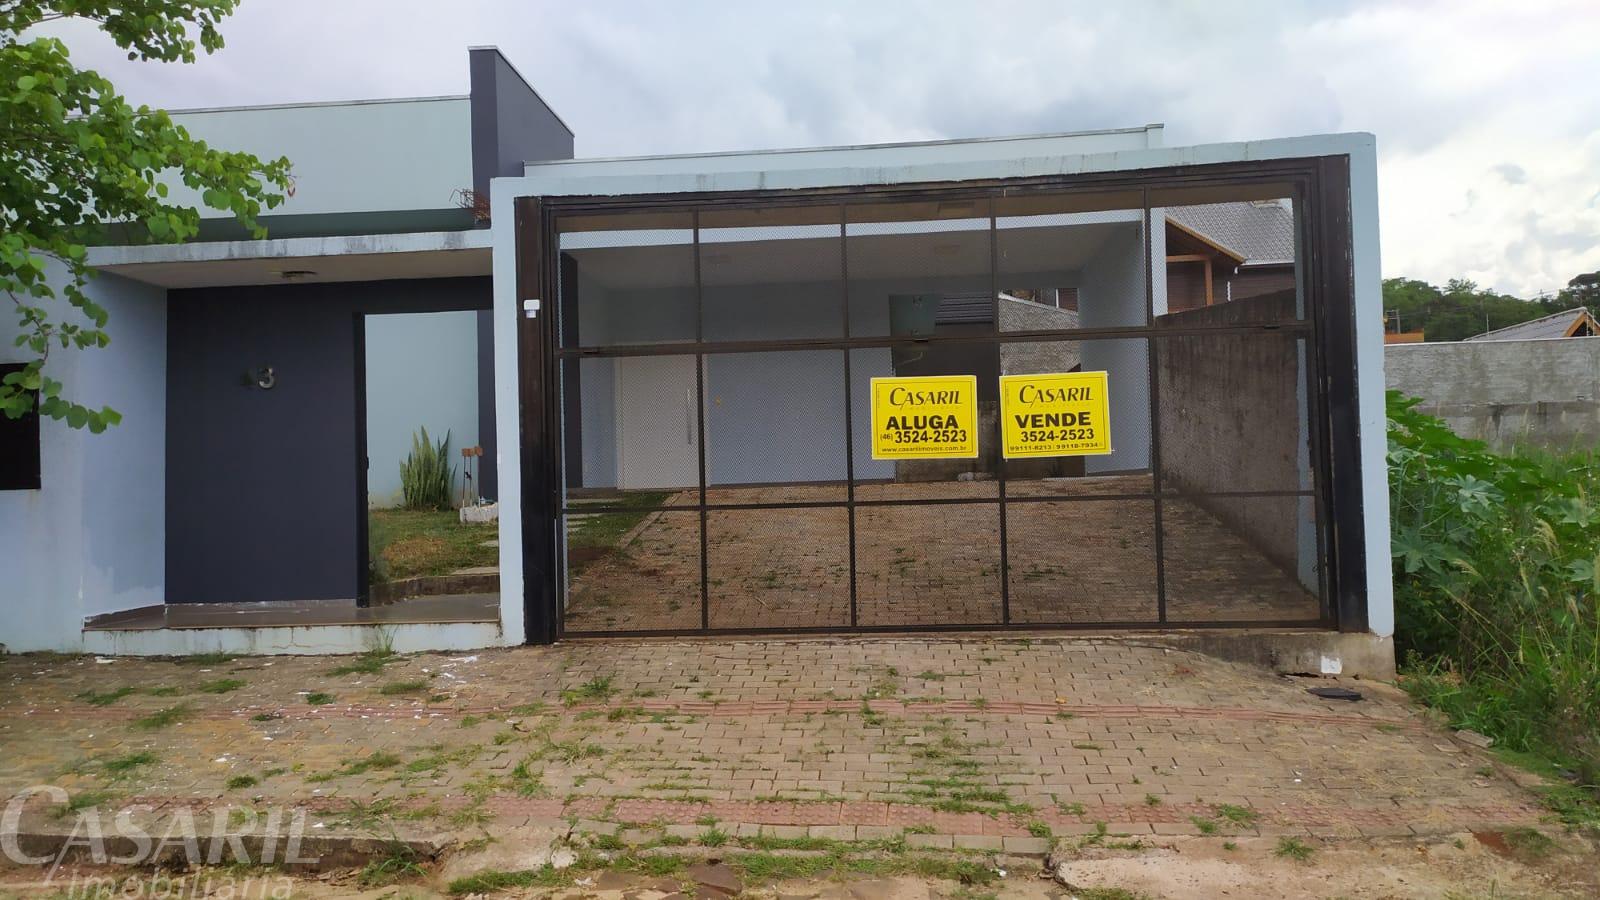 Investimento  Casa De Alvenaria À Venda, São Cristóvão, Francisco Beltrao - Pr